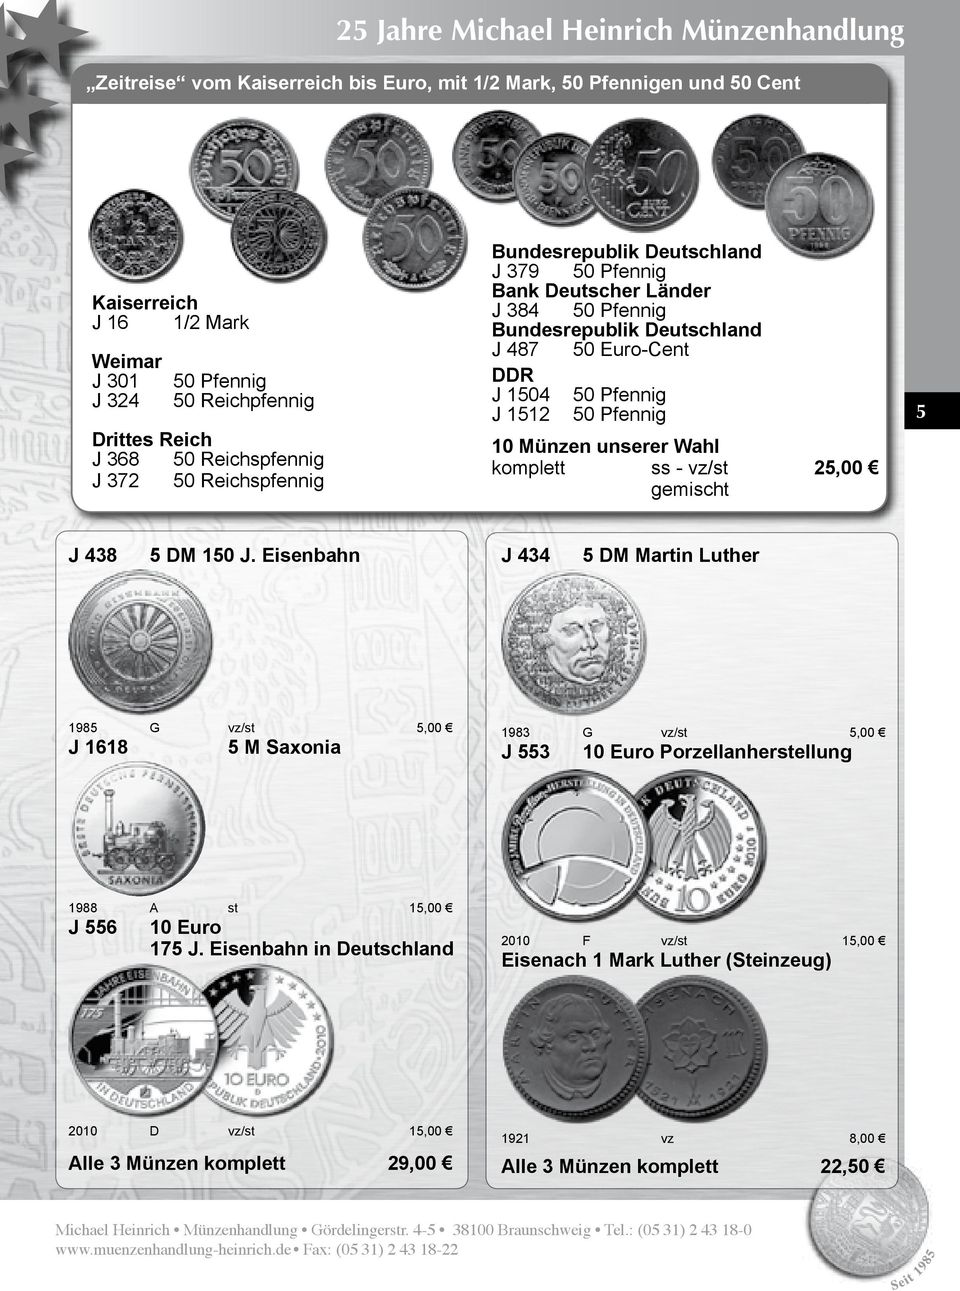 Pfennig J 1512 50 Pfennig 10 Münzen unserer Wahl komplett ss - vz/st 25,00 gemischt 5 J 438 5 DM 150 J.